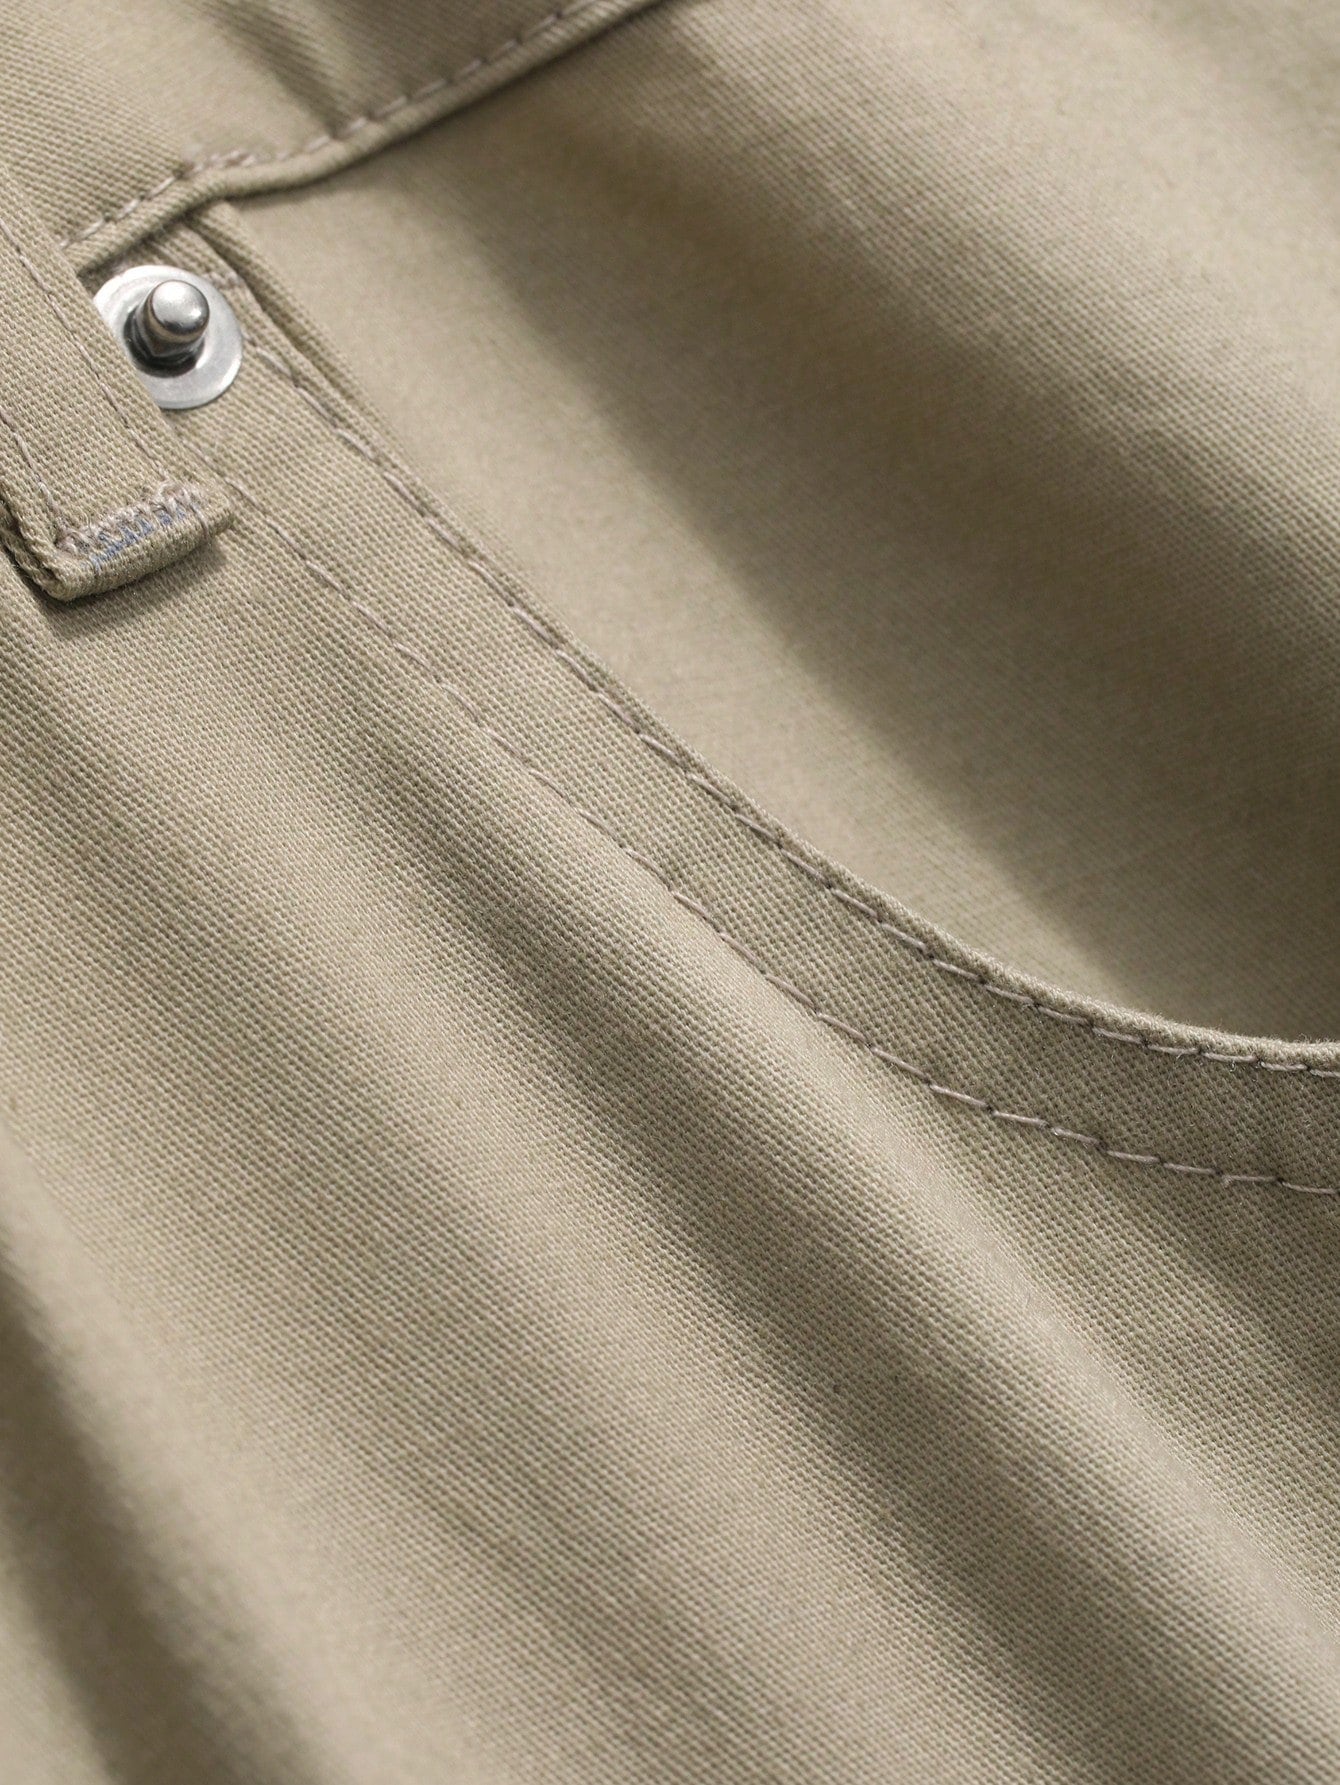 Men's Spring/Summer Plain Solid Color Zipper Pocket Pants With Built-In Belt